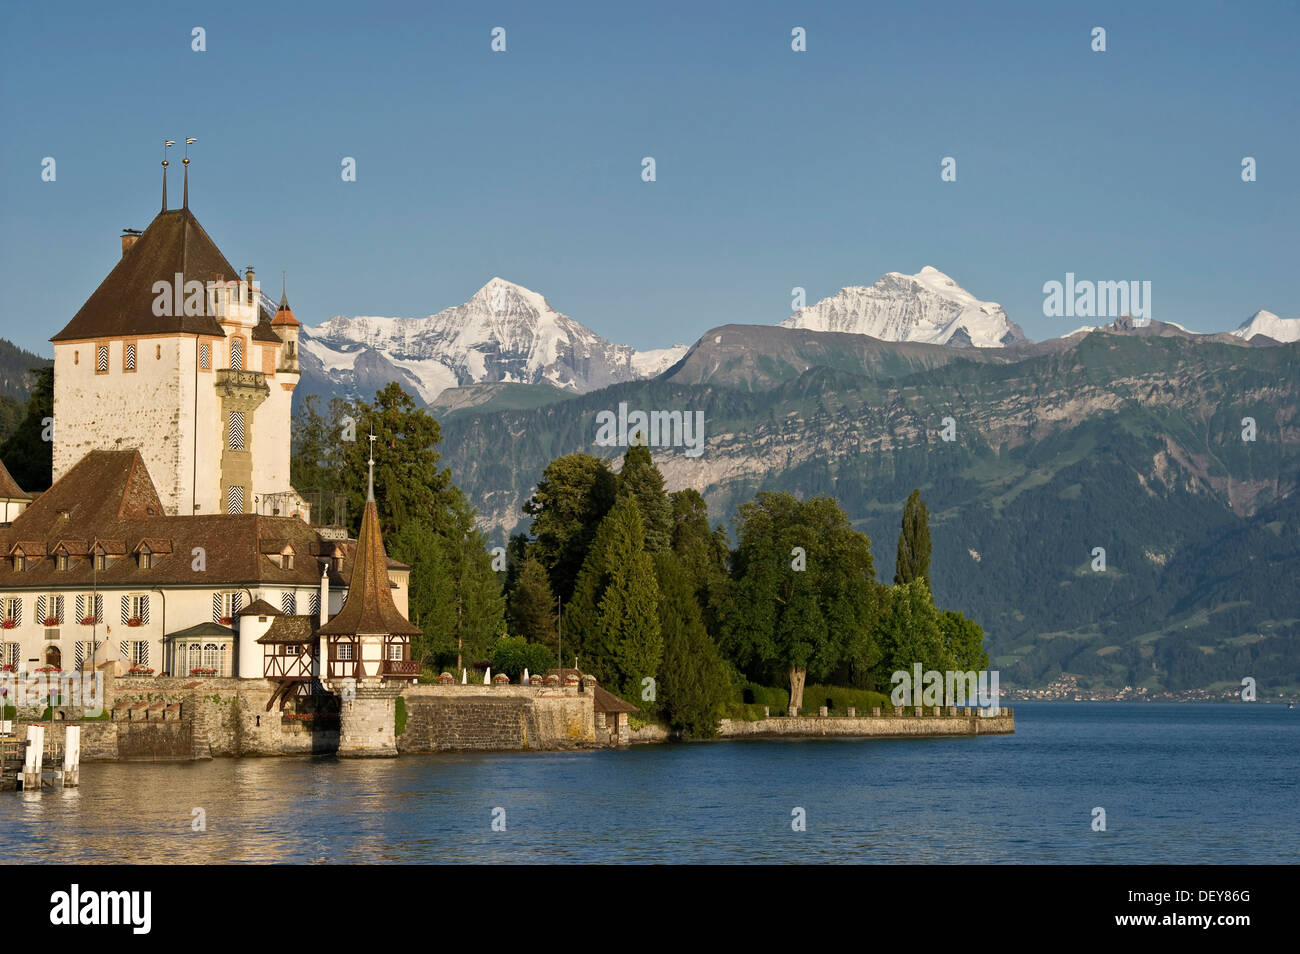 Schloss Oberhofen castello nei pressi di Thun e il Lago di Thun, montagne Eiger, Moench e Jungfrau sul retro, il Cantone di Berna, Svizzera, Europa Foto Stock